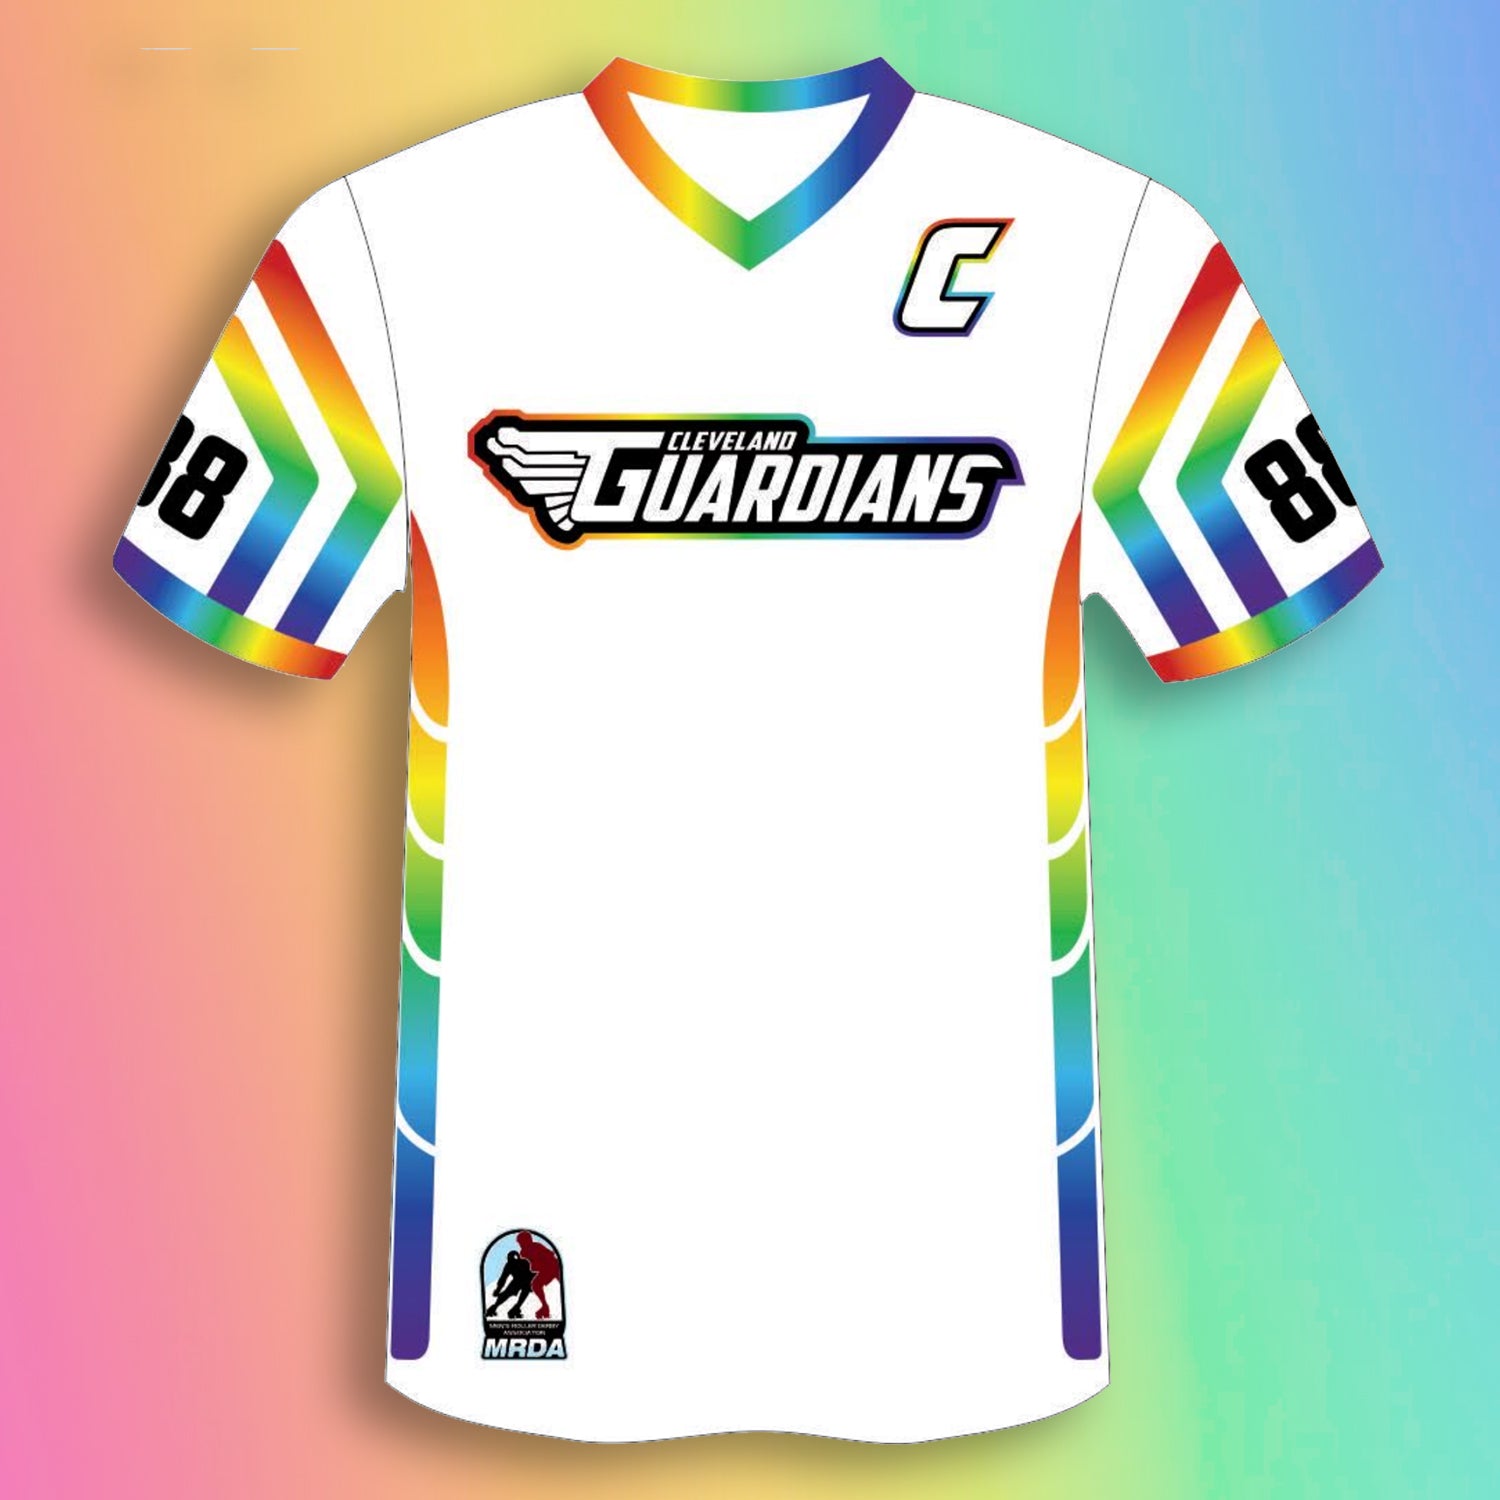 Guardians Pride - Authentic Jerseys